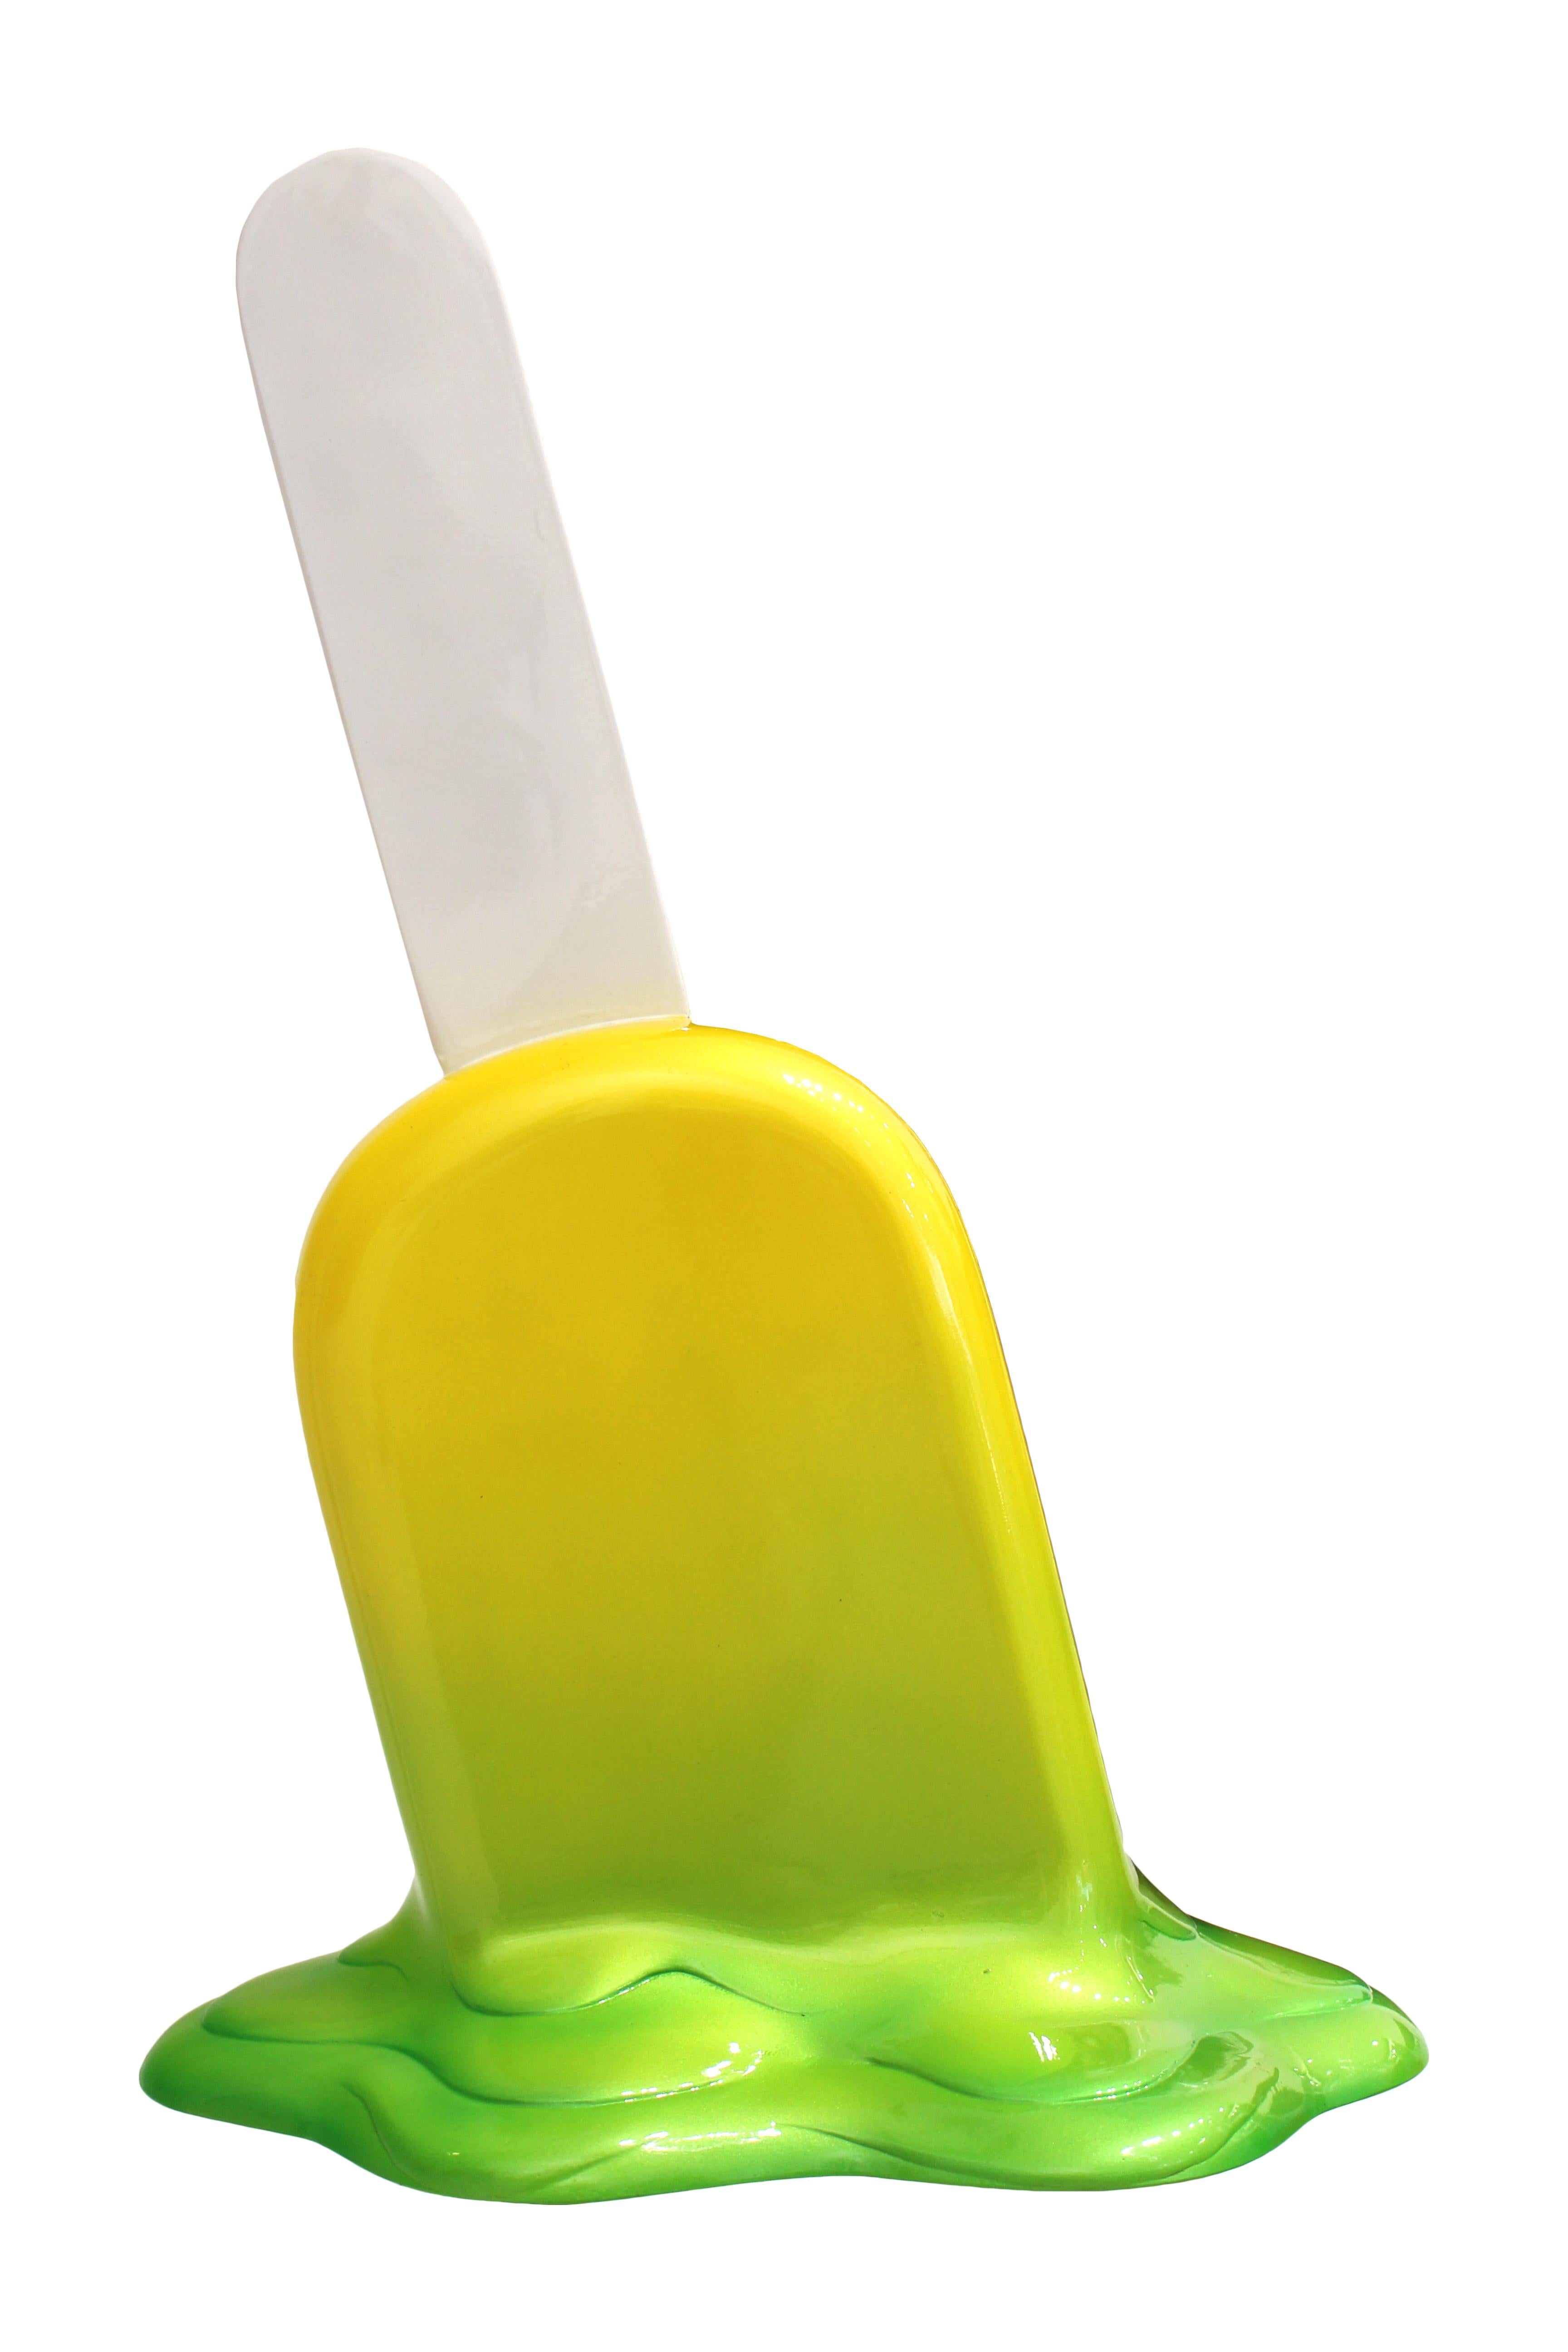 Popsicle – Yellow/Green Ombre - Sculpture by Elena Bulatova